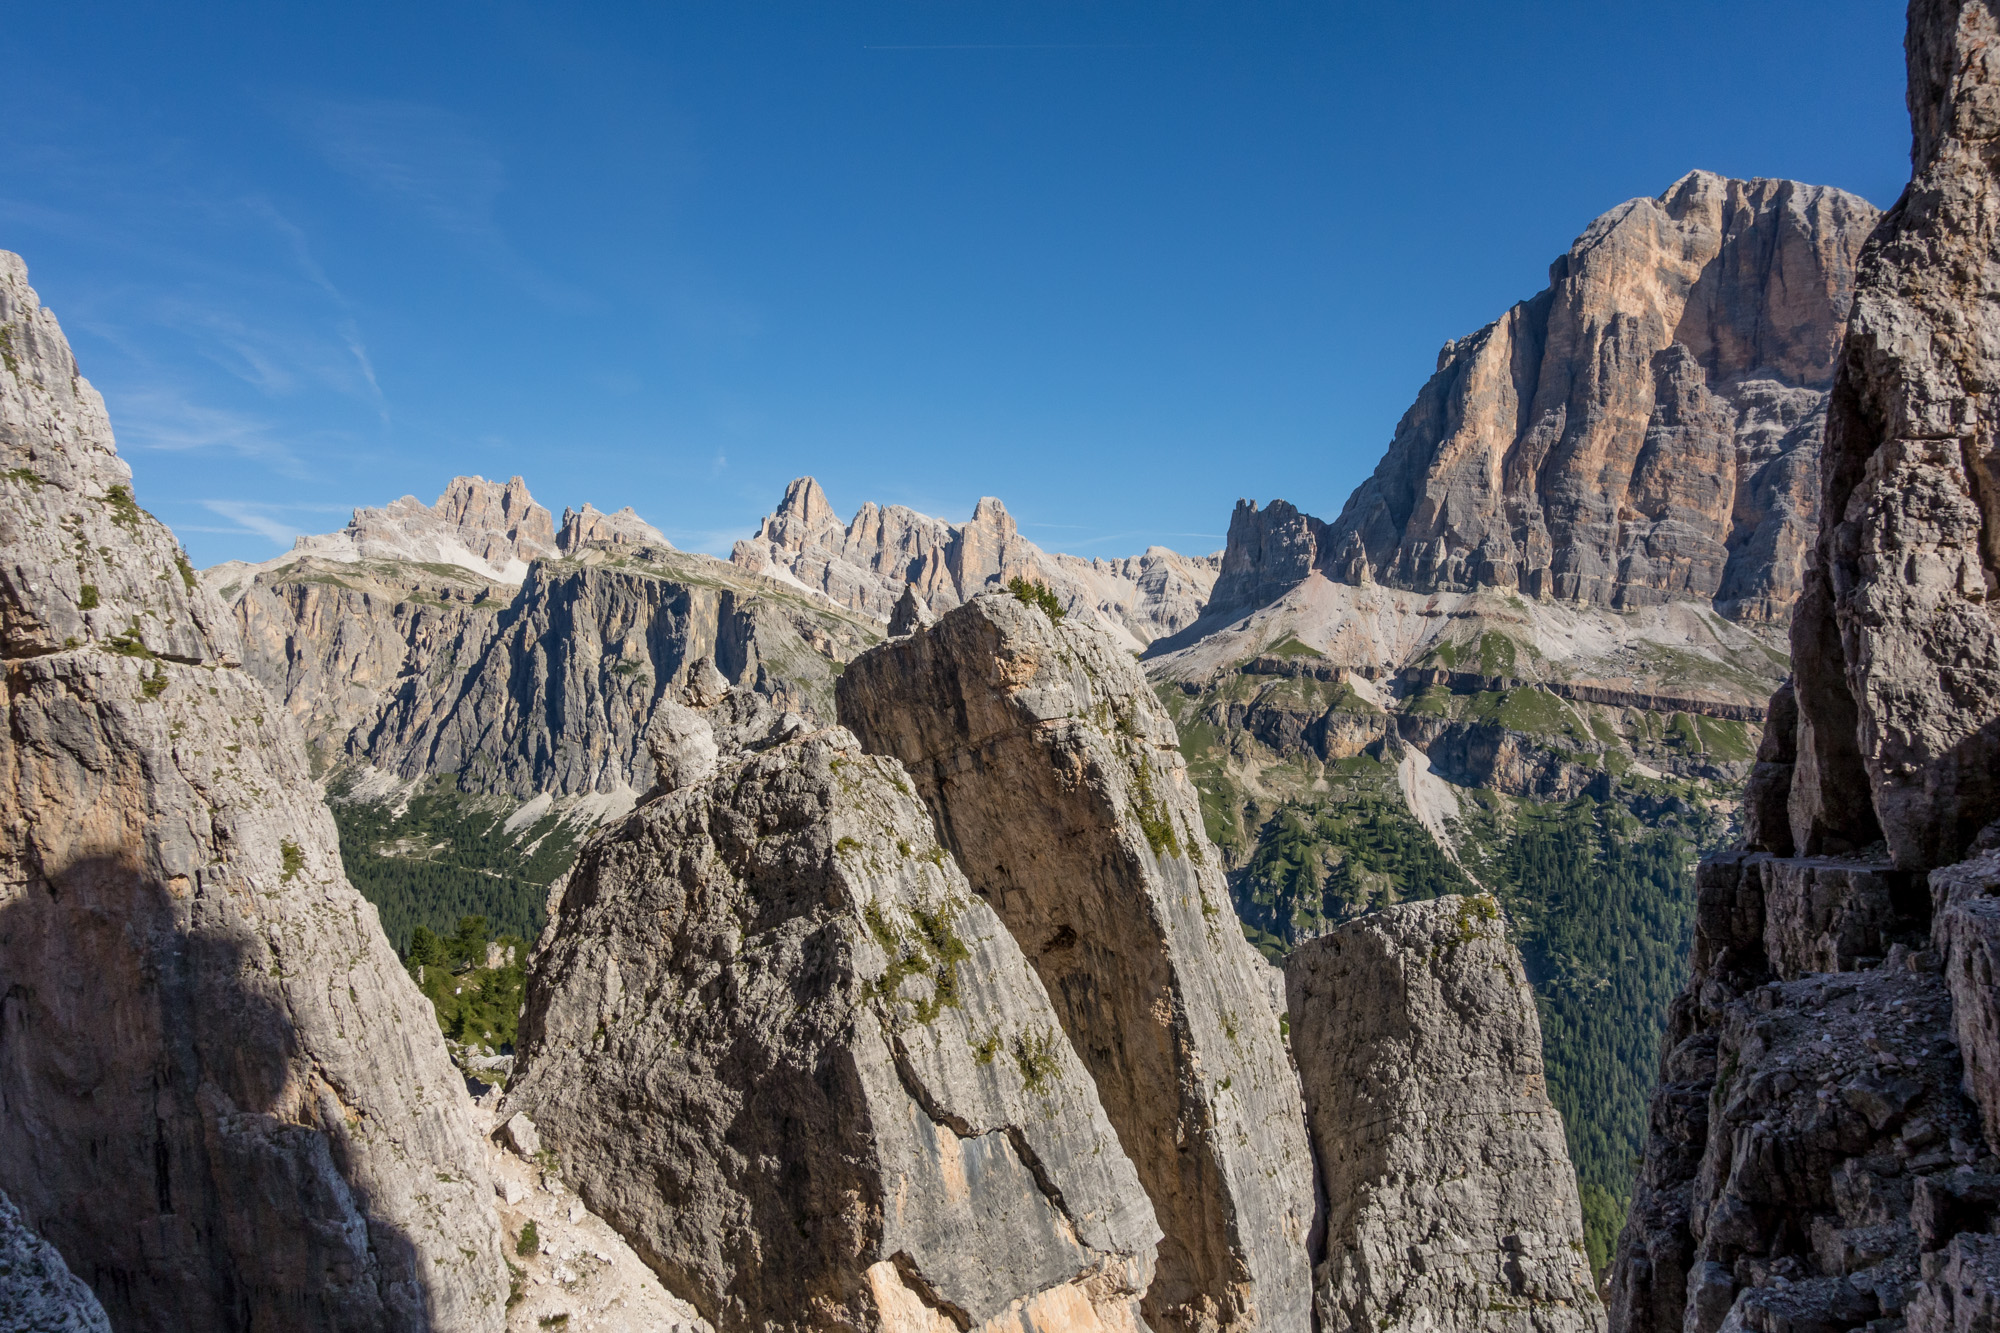 alpine summer rock climbing on cinque torri in the dolomites